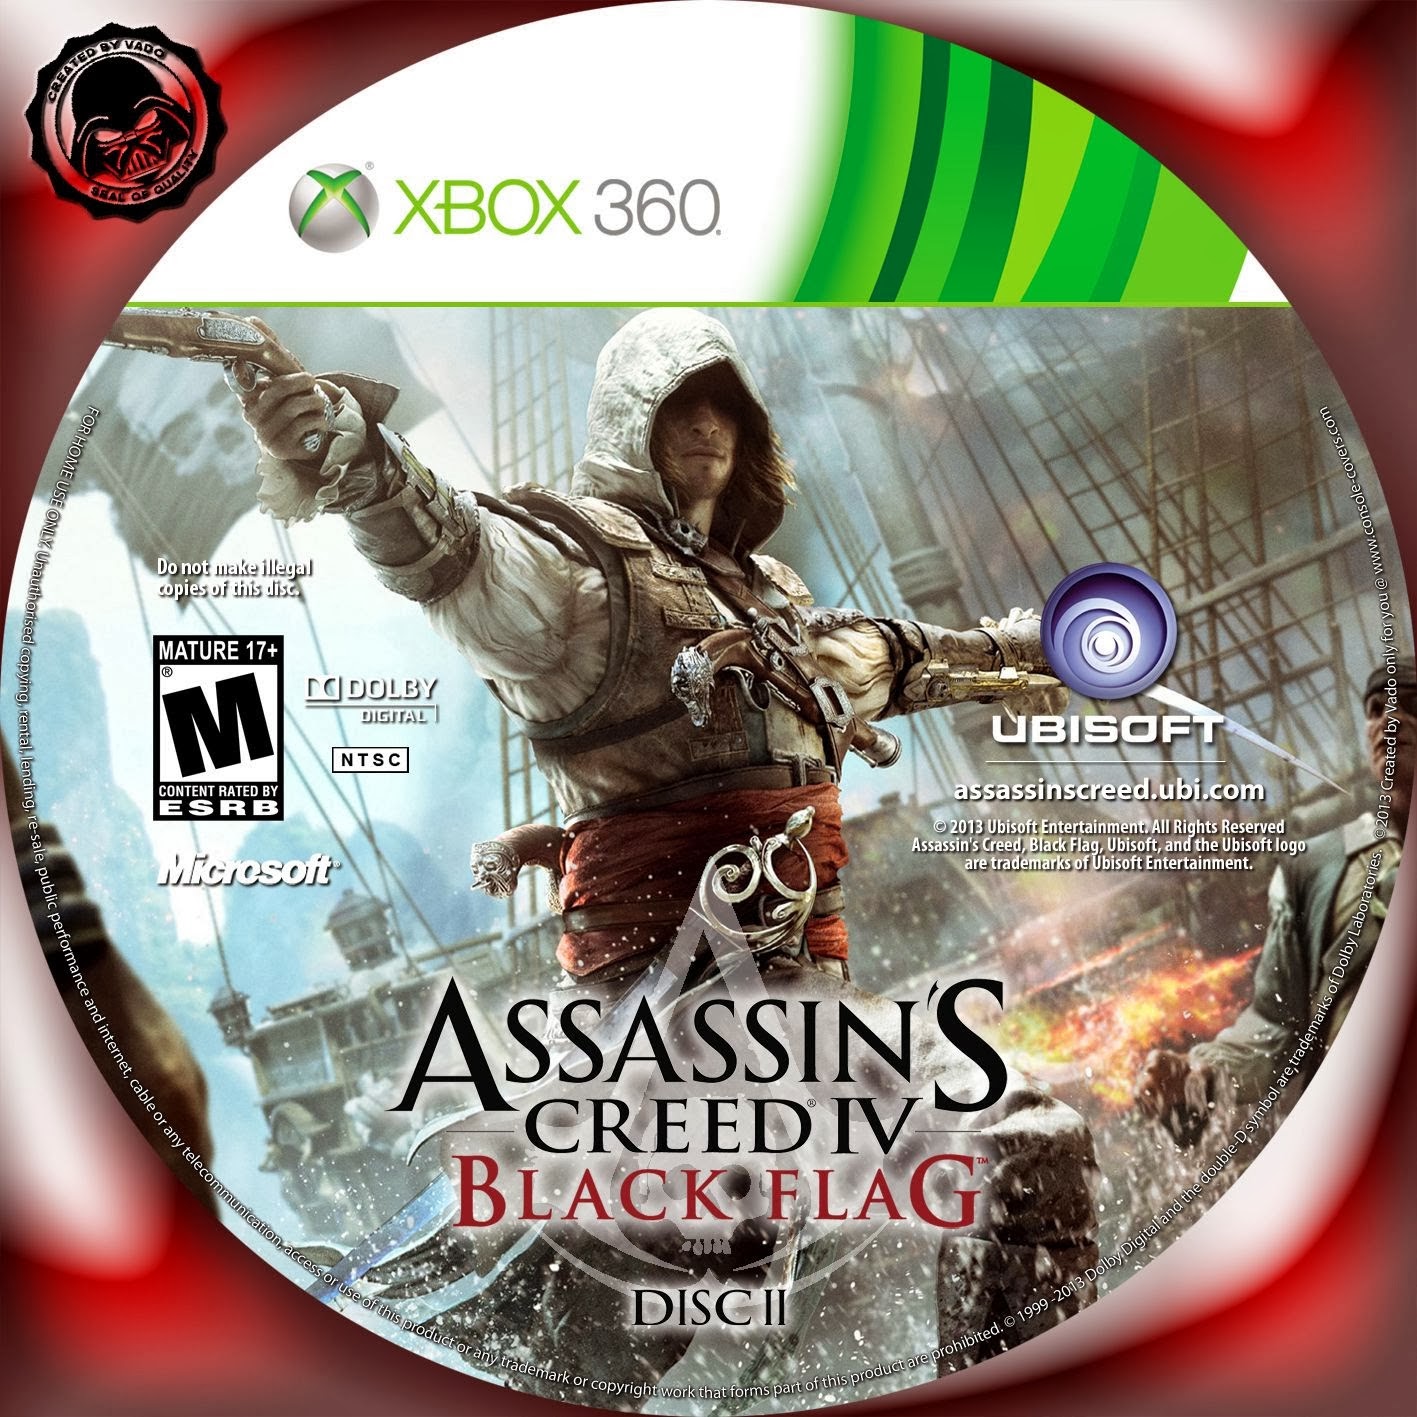 Хбокс 360 на двоих. Assassin’s Creed® IV Xbox 360 обложка. Xbox one и Xbox 360 Assassin's Creed 4 Black Flag. Assassin's Creed Black Flag диск. Assassins Creed IV Xbox 360 этикетка.